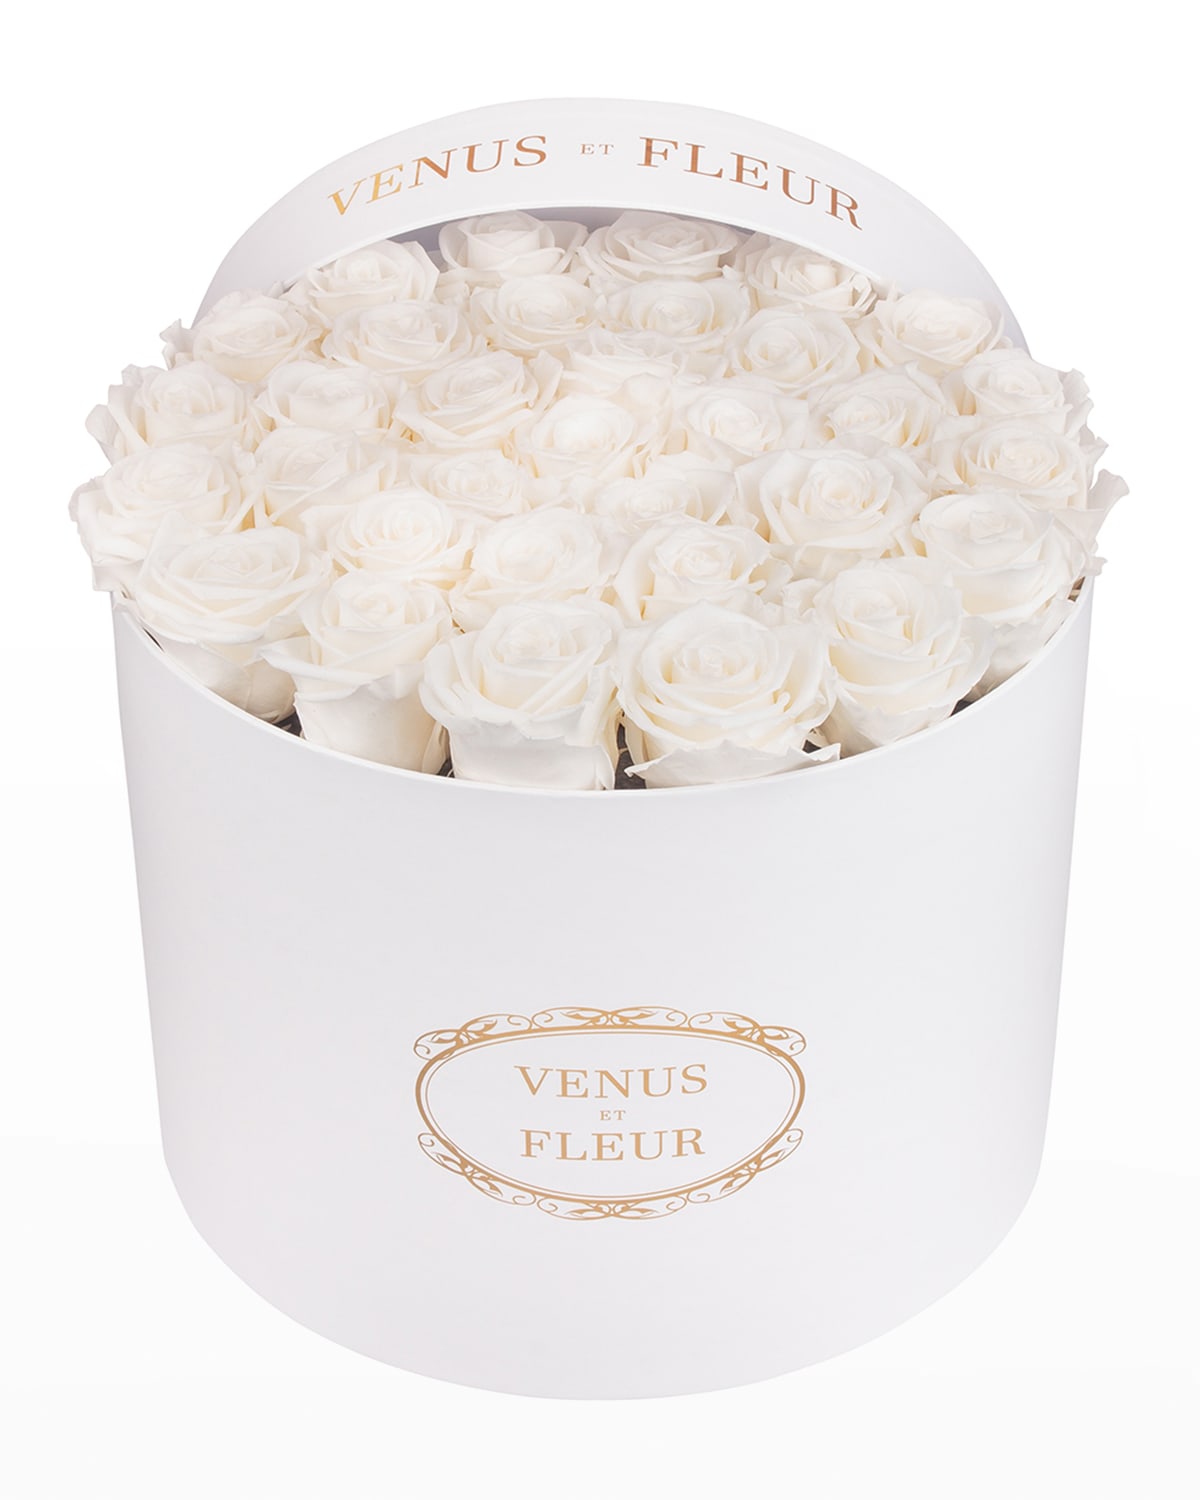 Venus Et Fleur Classic Large Round Rose Box In White